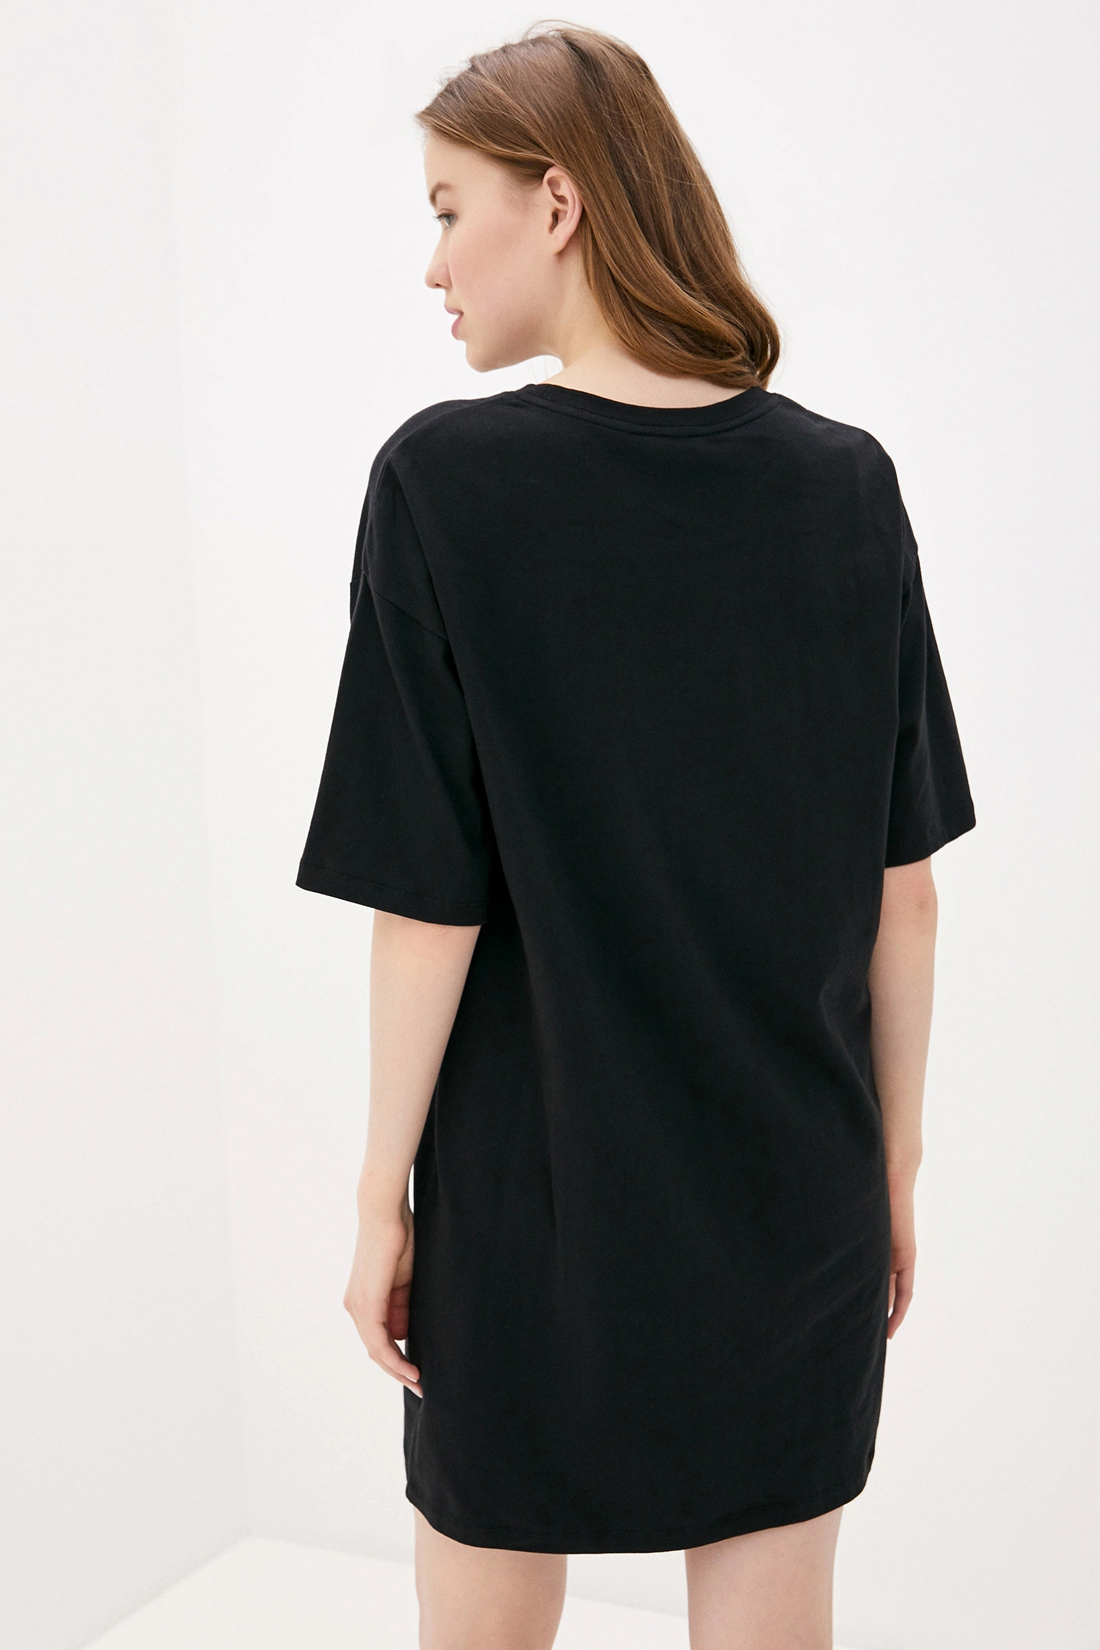 Платье-футболка с принтом (арт. baon B450062), размер XXL, цвет черный Платье-футболка с принтом (арт. baon B450062) - фото 5